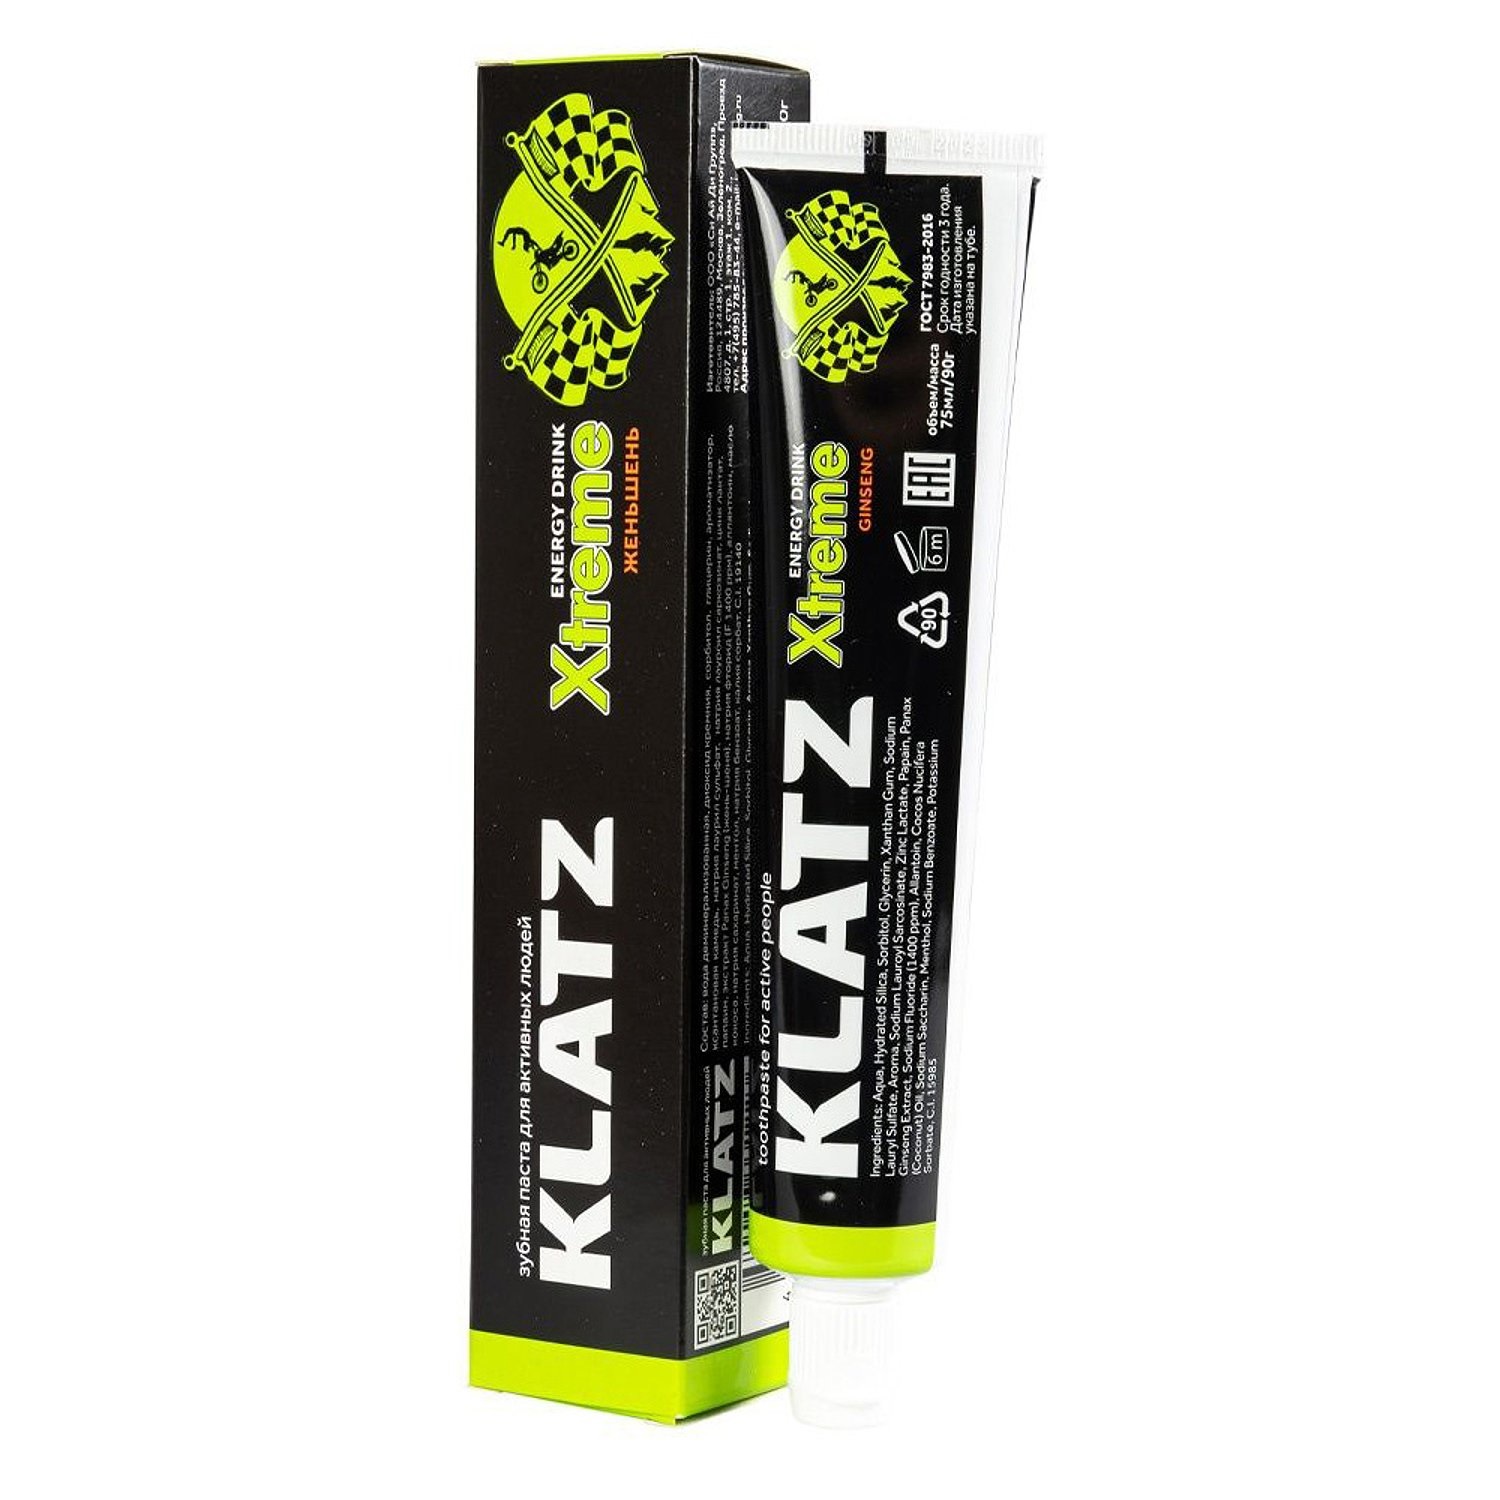 Зубная паста KLATZ X-treme Energy Drink для активных людей, женьшень, 75 мл зубная паста для активных людей klatz x treme energy drink женьшень 75мл